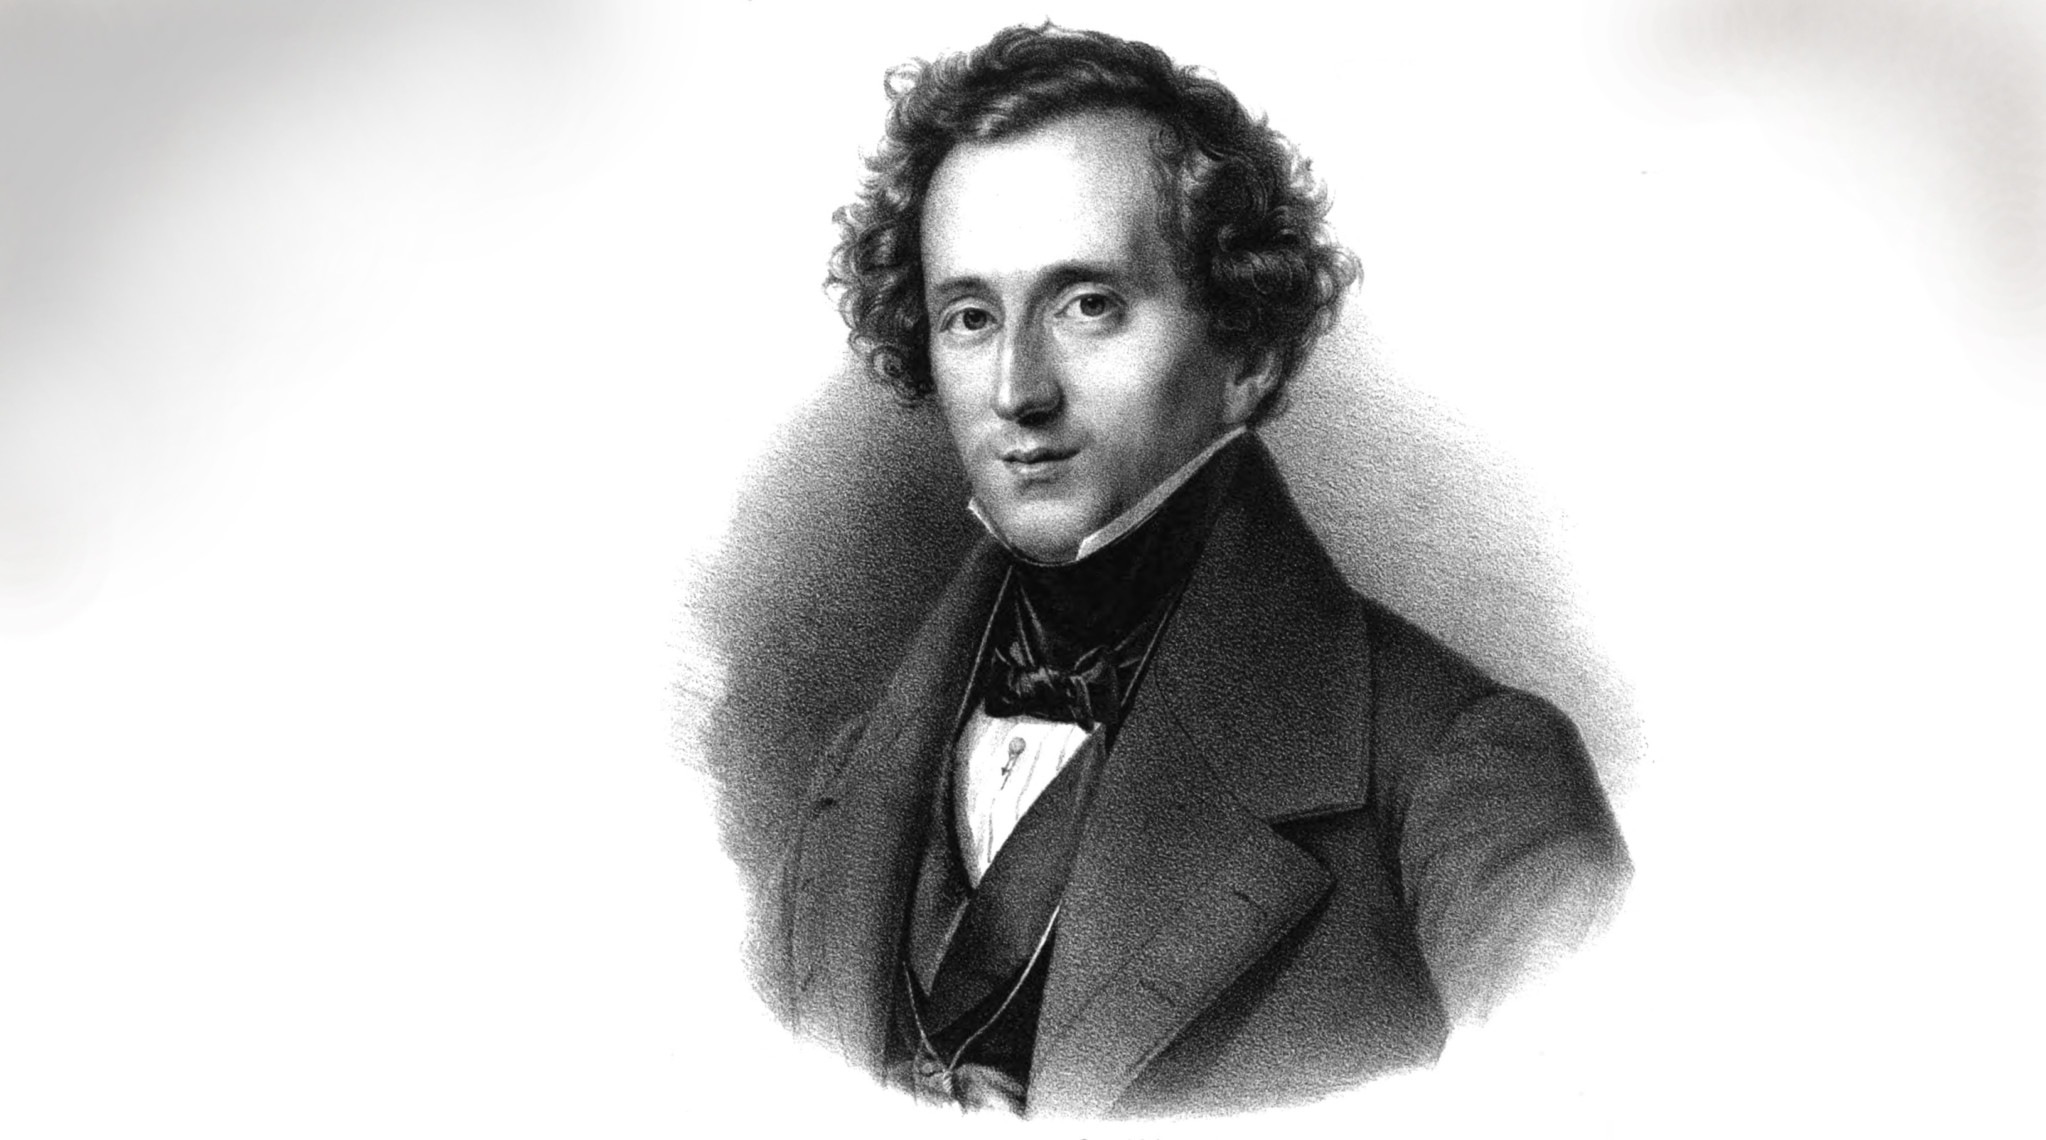 International Mendelssohn Festival